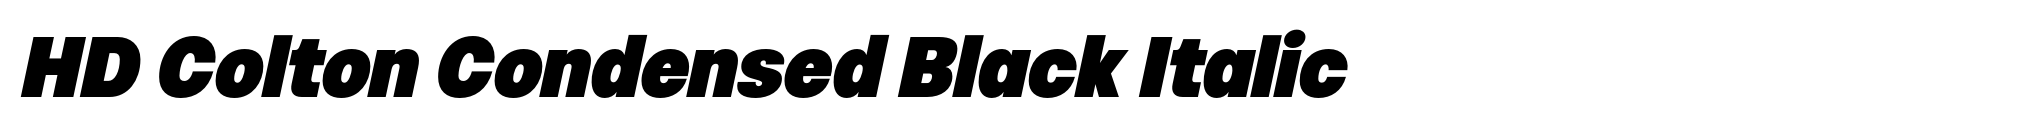 HD Colton Condensed Black Italic image